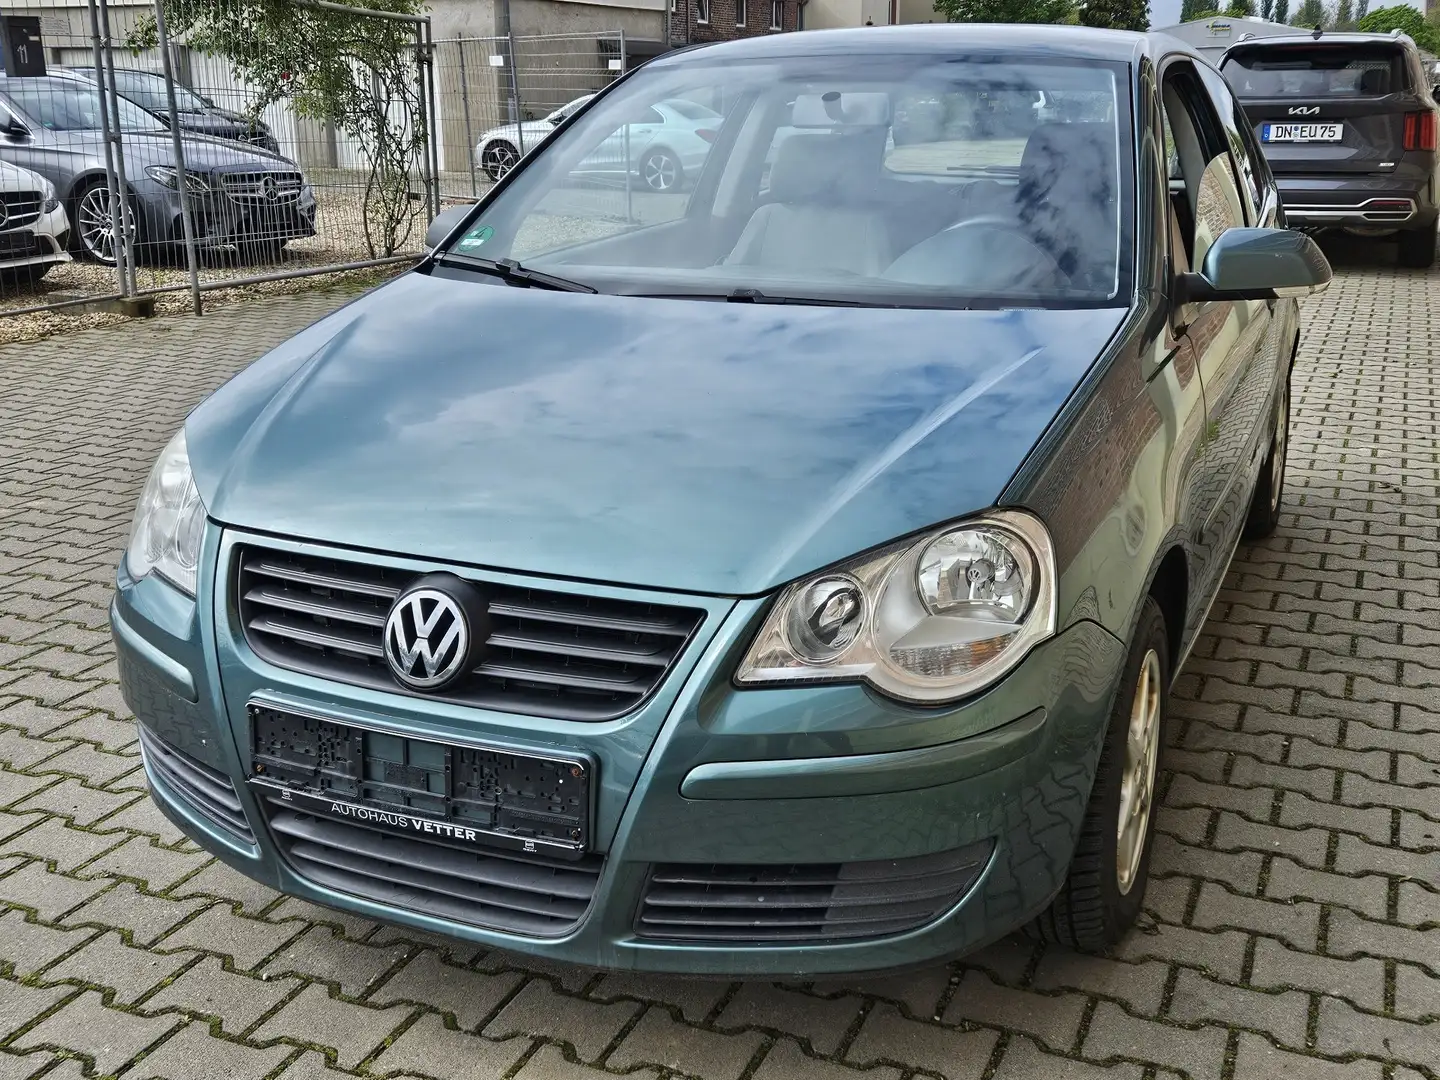 Volkswagen Polo 1.4 FSI tüv bis MAI 25 Verde - 1